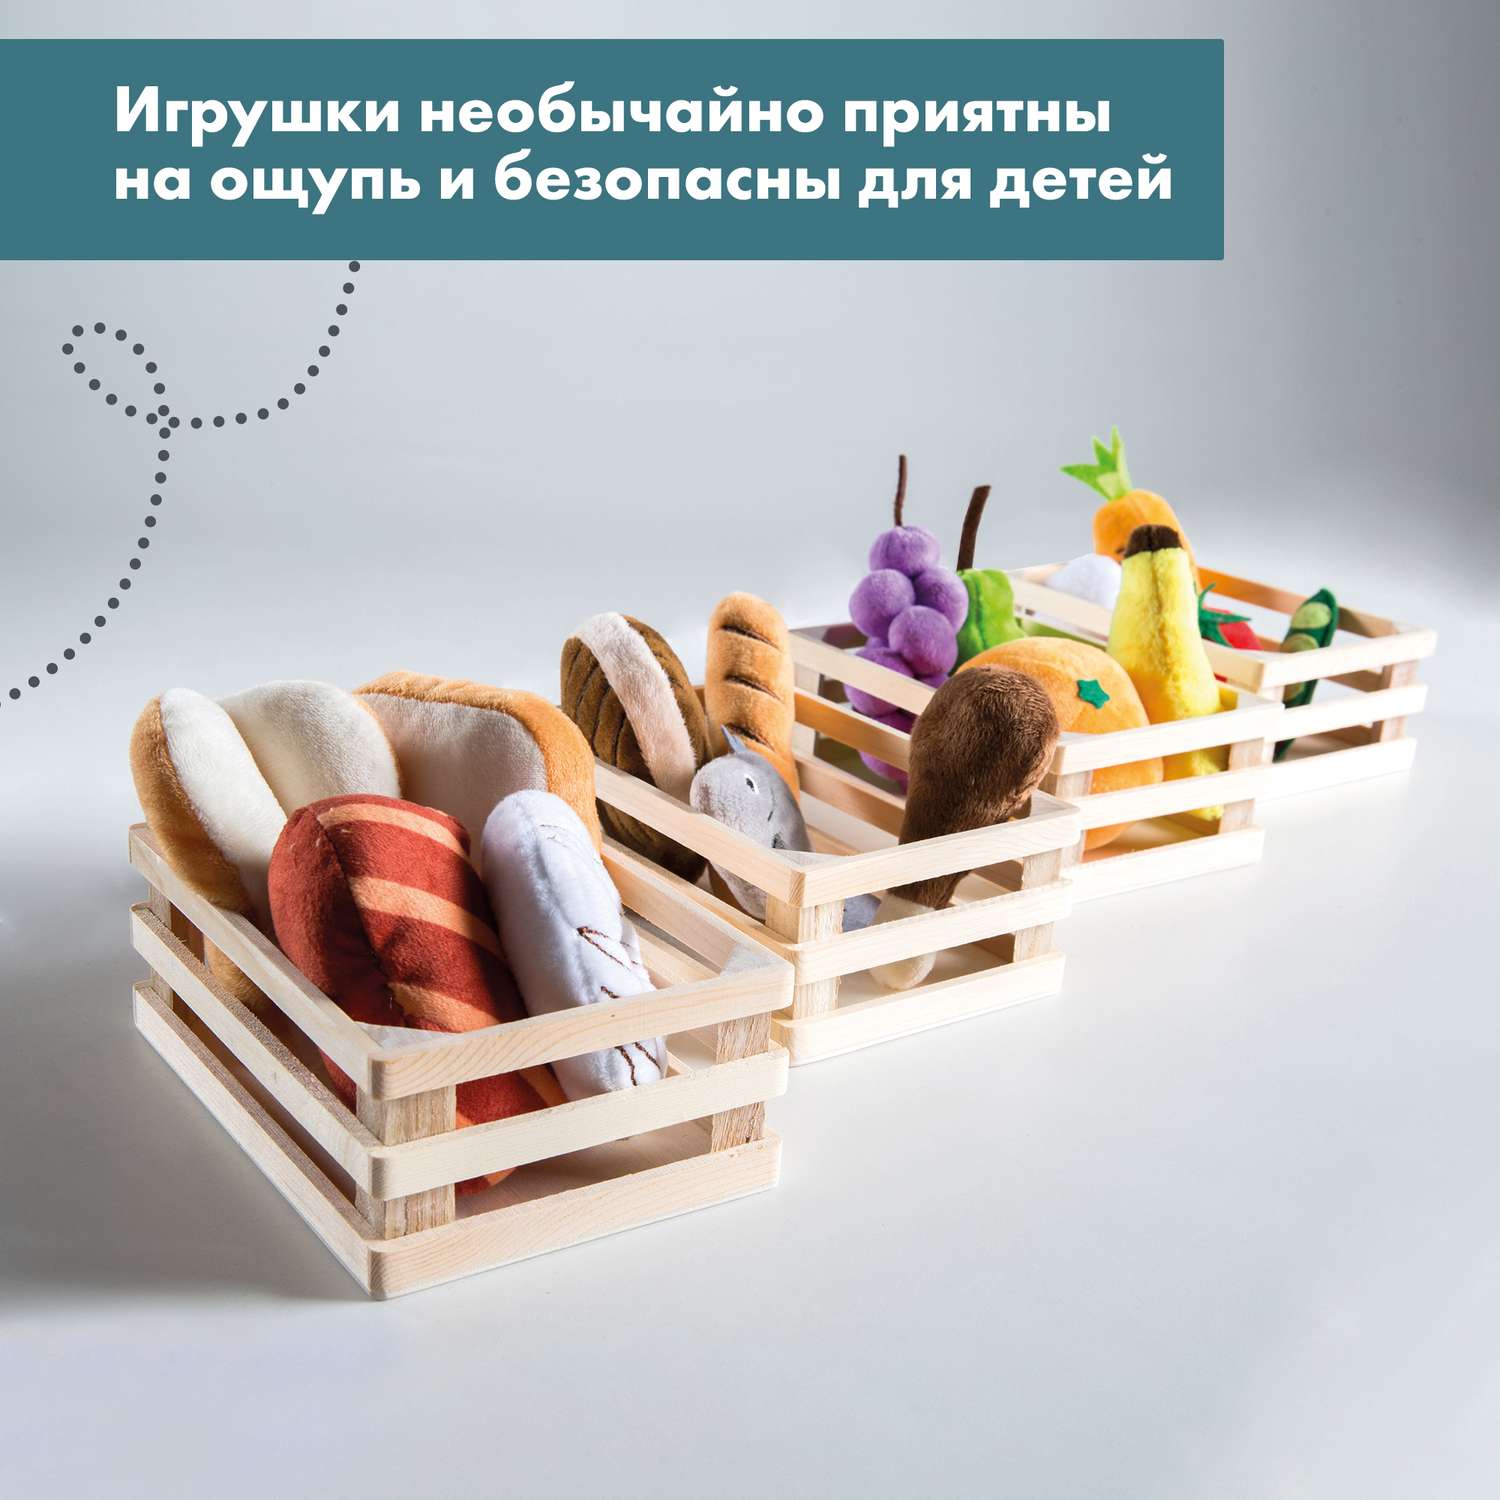 Набор плюшевых продуктов Roba игровой для детского магазина или кухни 98145 - фото 9